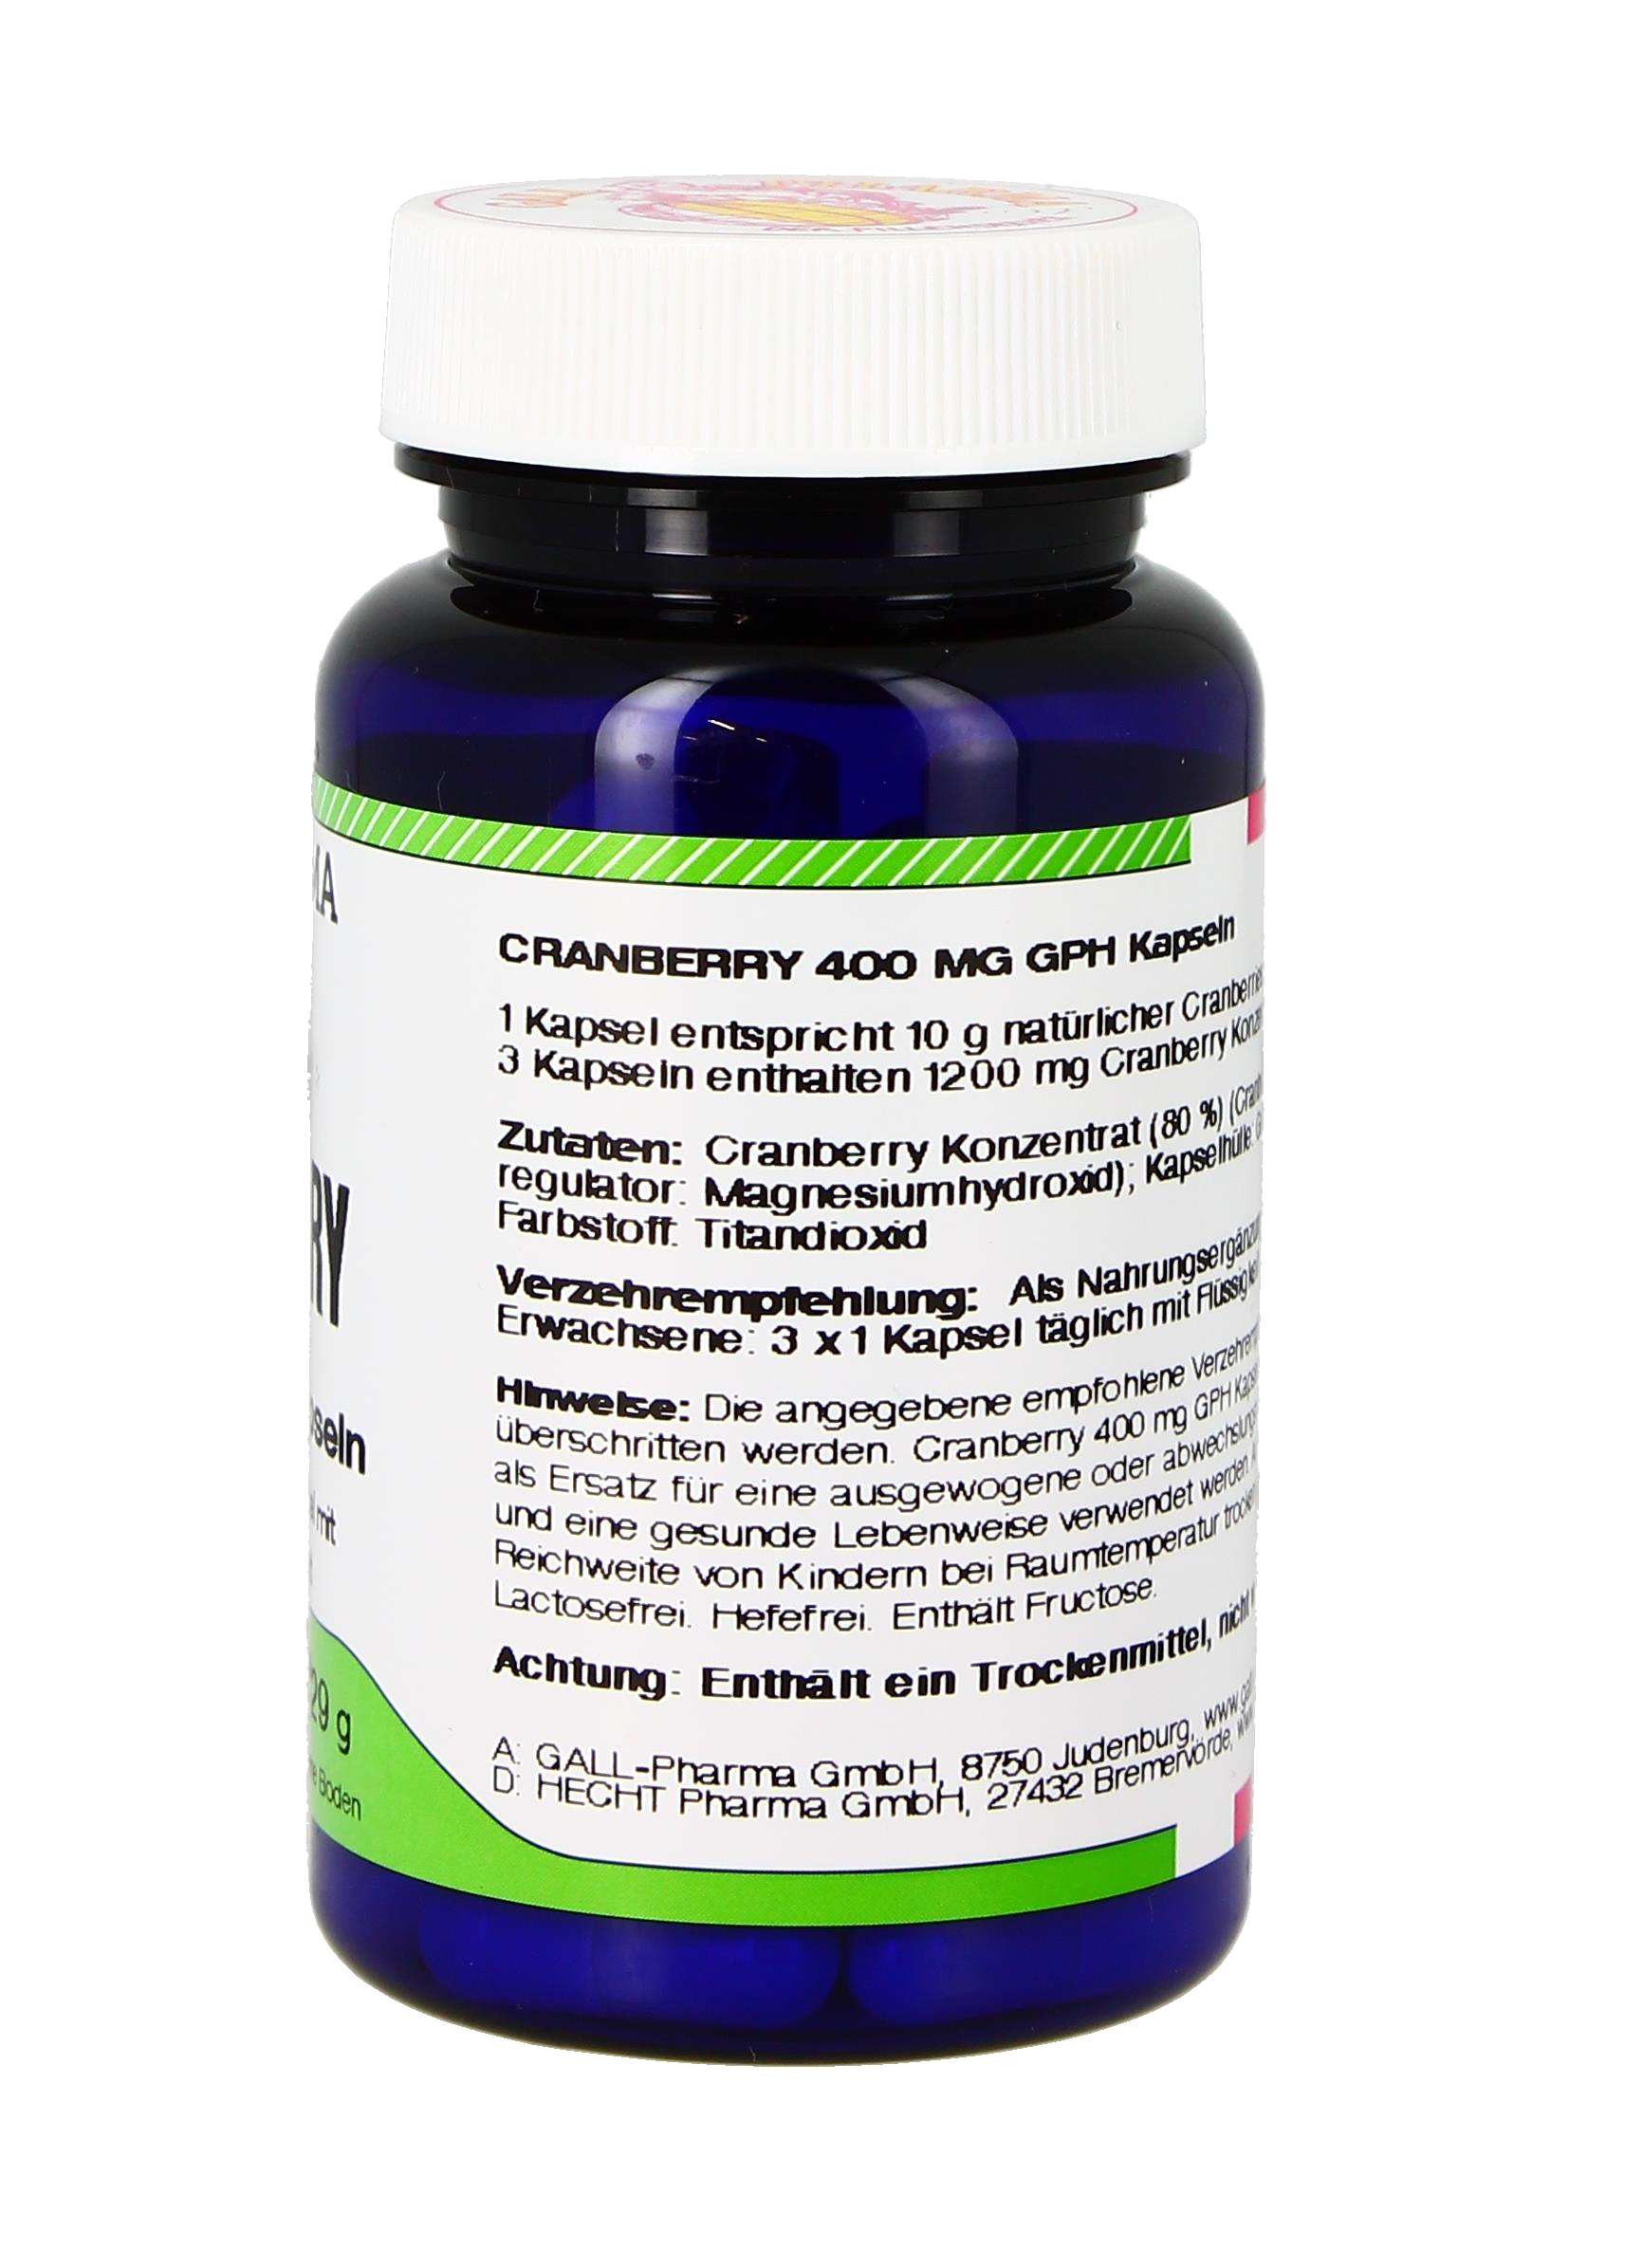 Cranberry 400 mg GPH Kapseln